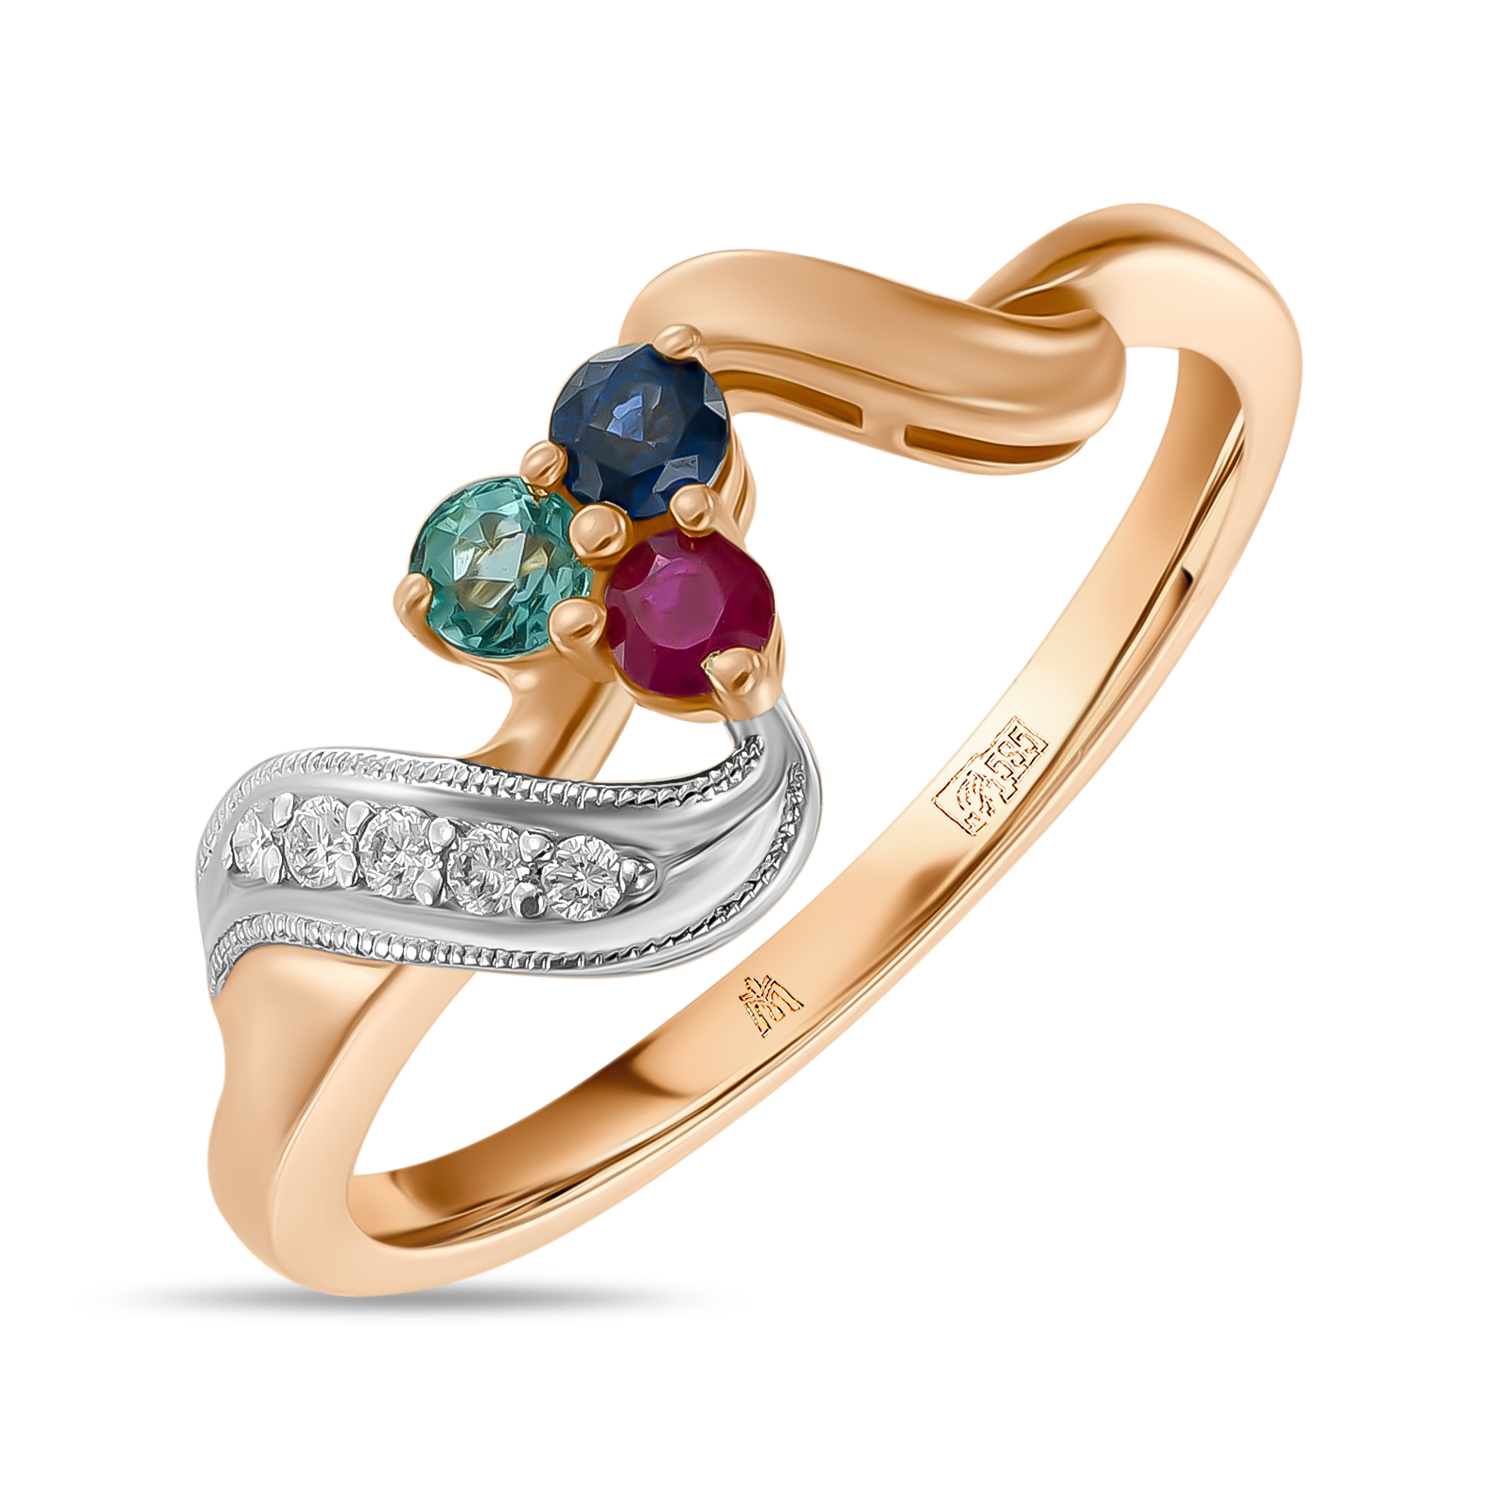 Кольца МЮЗ Золотое кольцо с бриллиантами, изумрудом, рубином и сапфиром